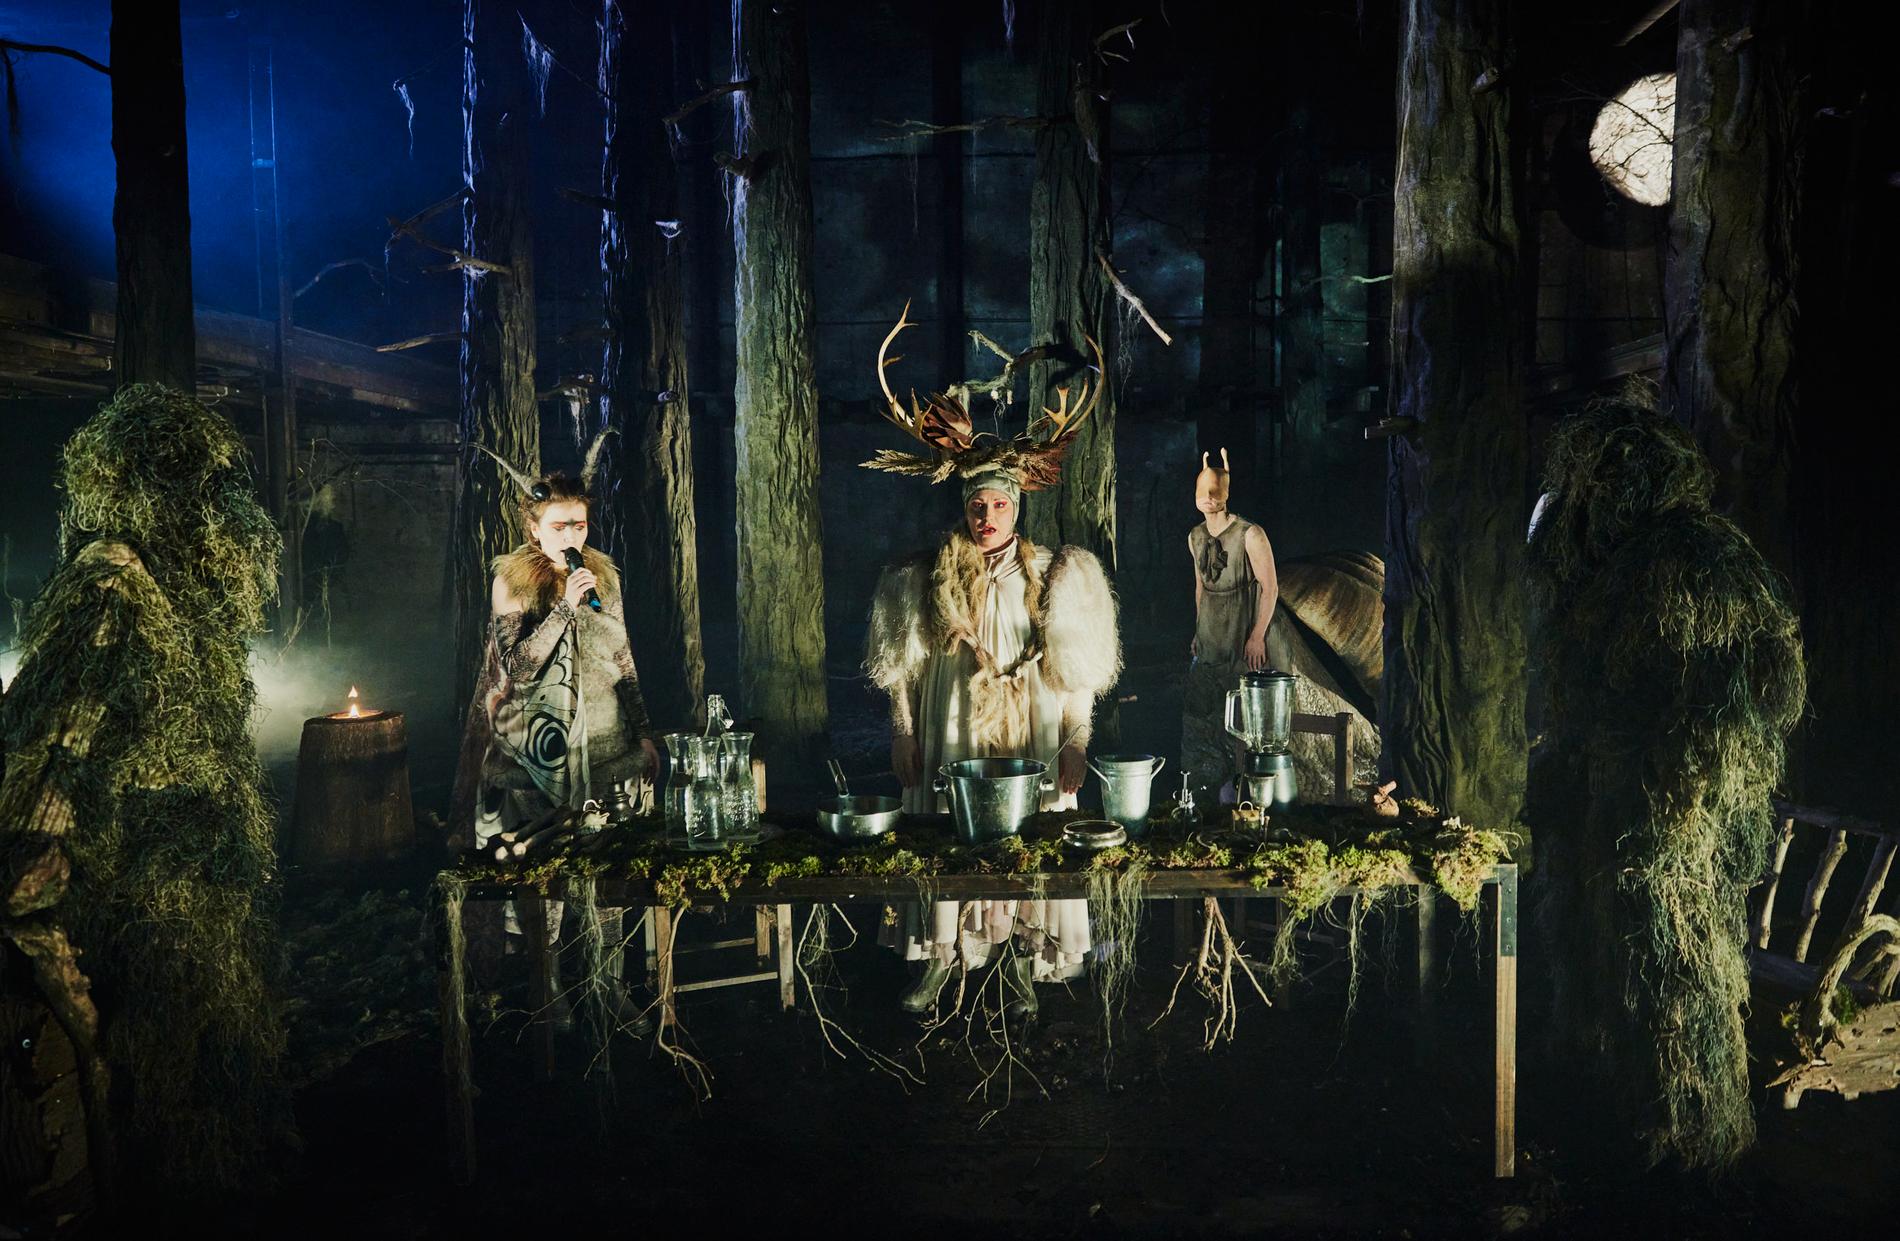 En skog med egenartade varelser på scenen i Orionteaterns ”Det vilda”.